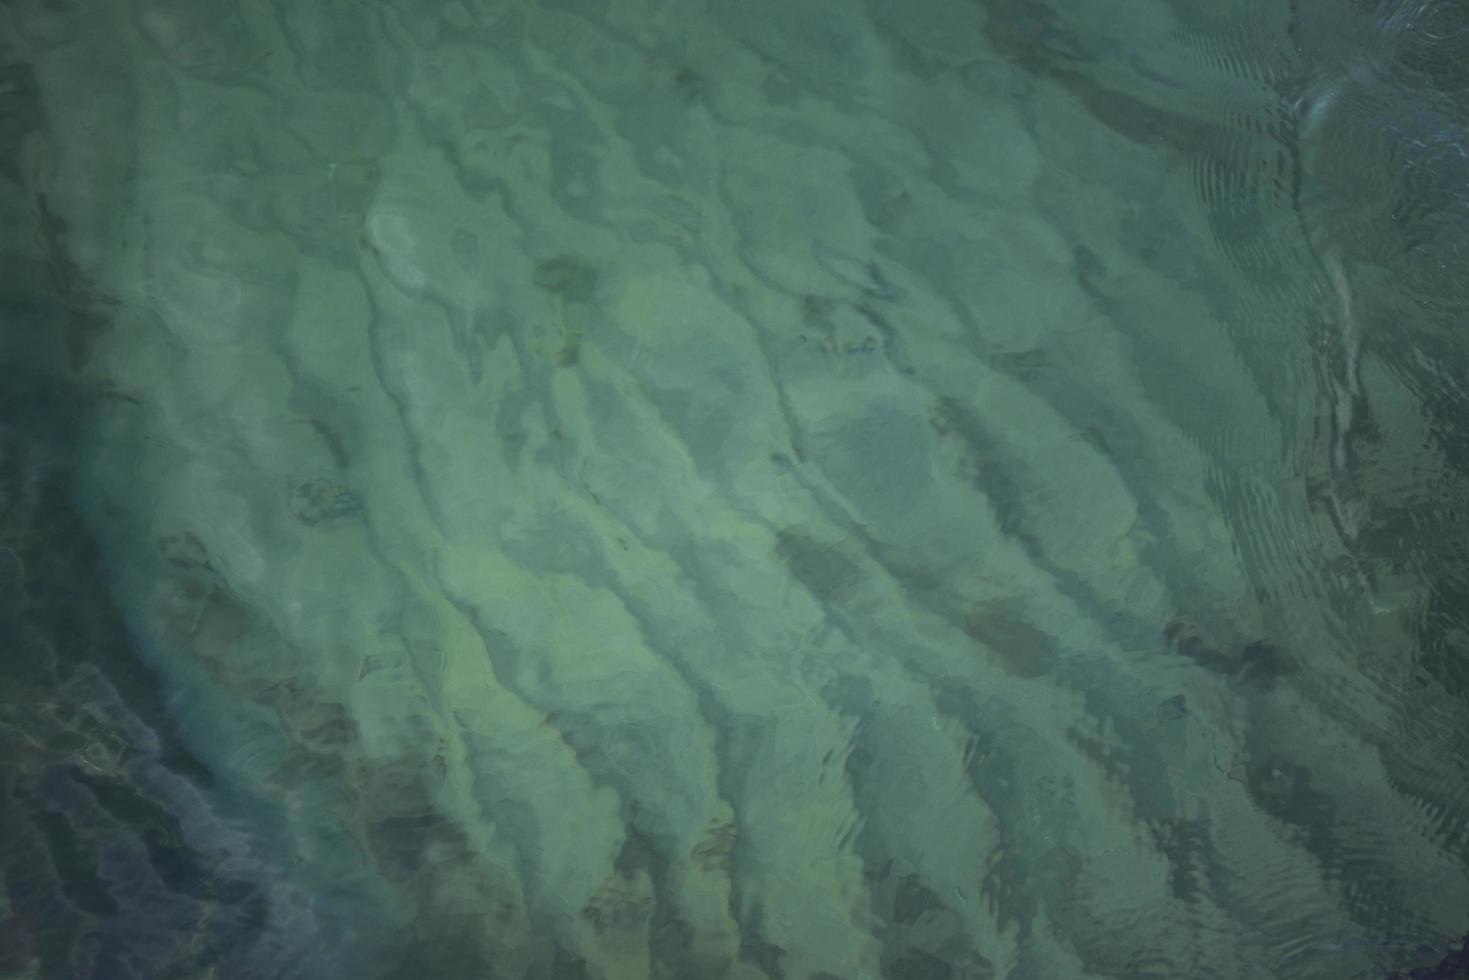 Tapetenwellen auf dem Meerwasserhintergrundtapete foto